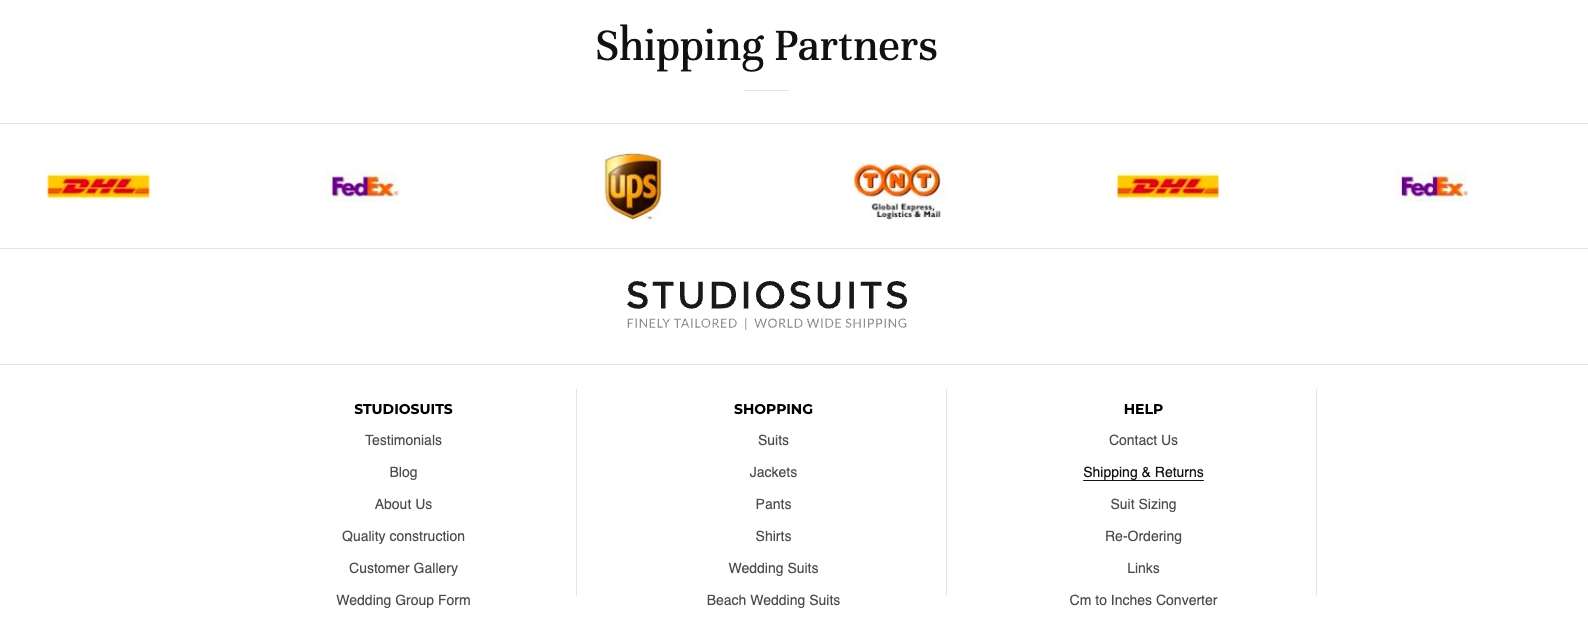 Image of StudioSuits’ website